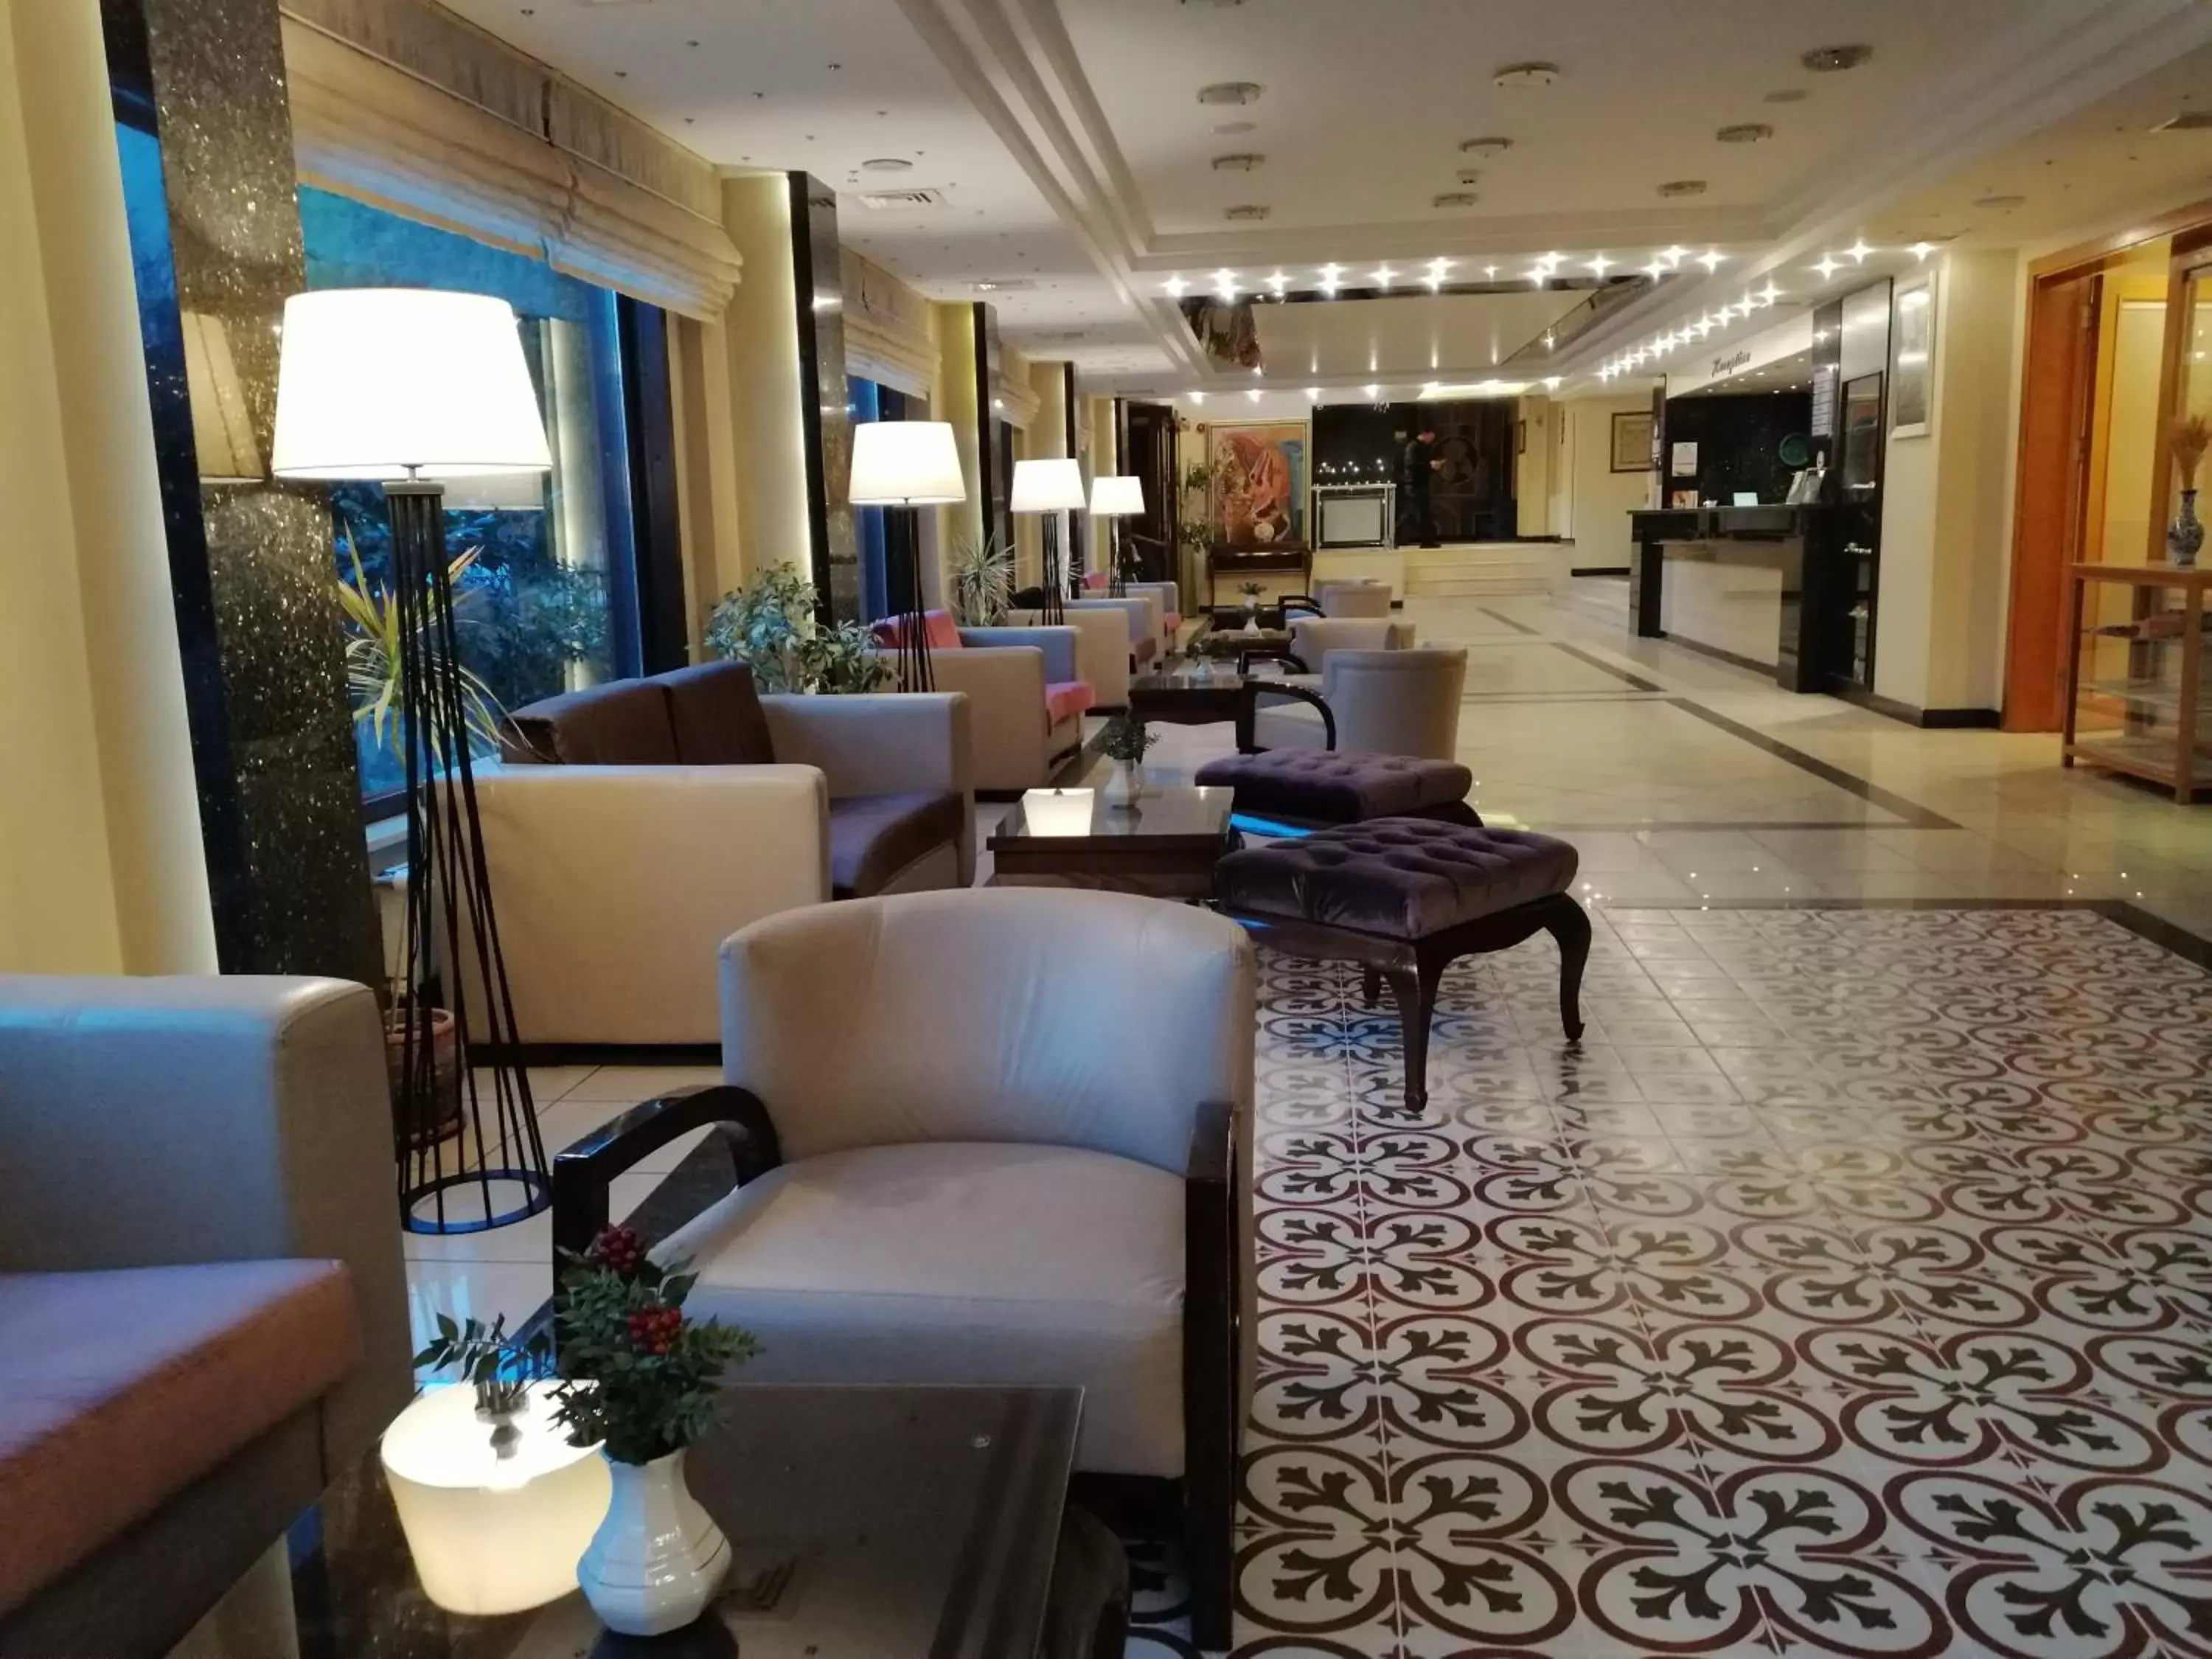 Lobby or reception, Lobby/Reception in Iris Hotel